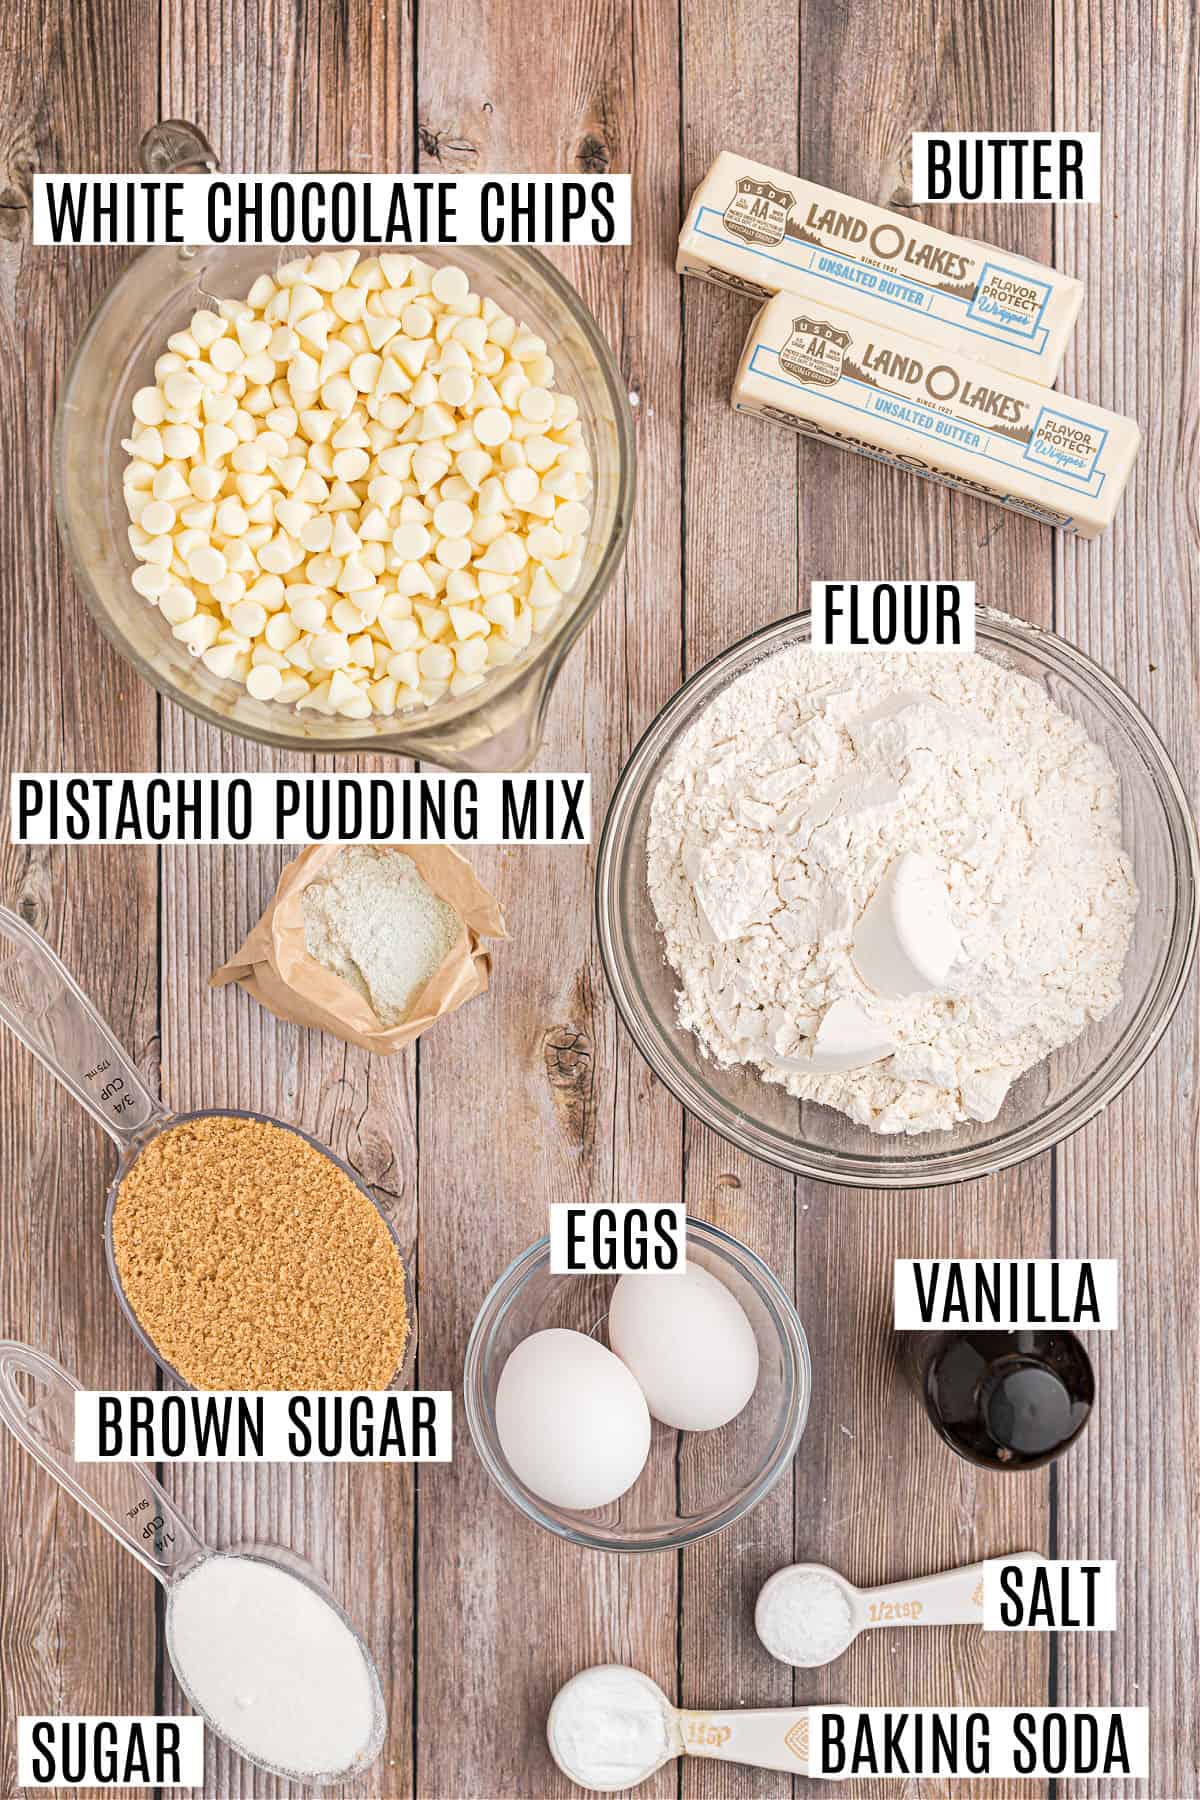 Ingredienti necessari per fare i biscotti al pistacchio.